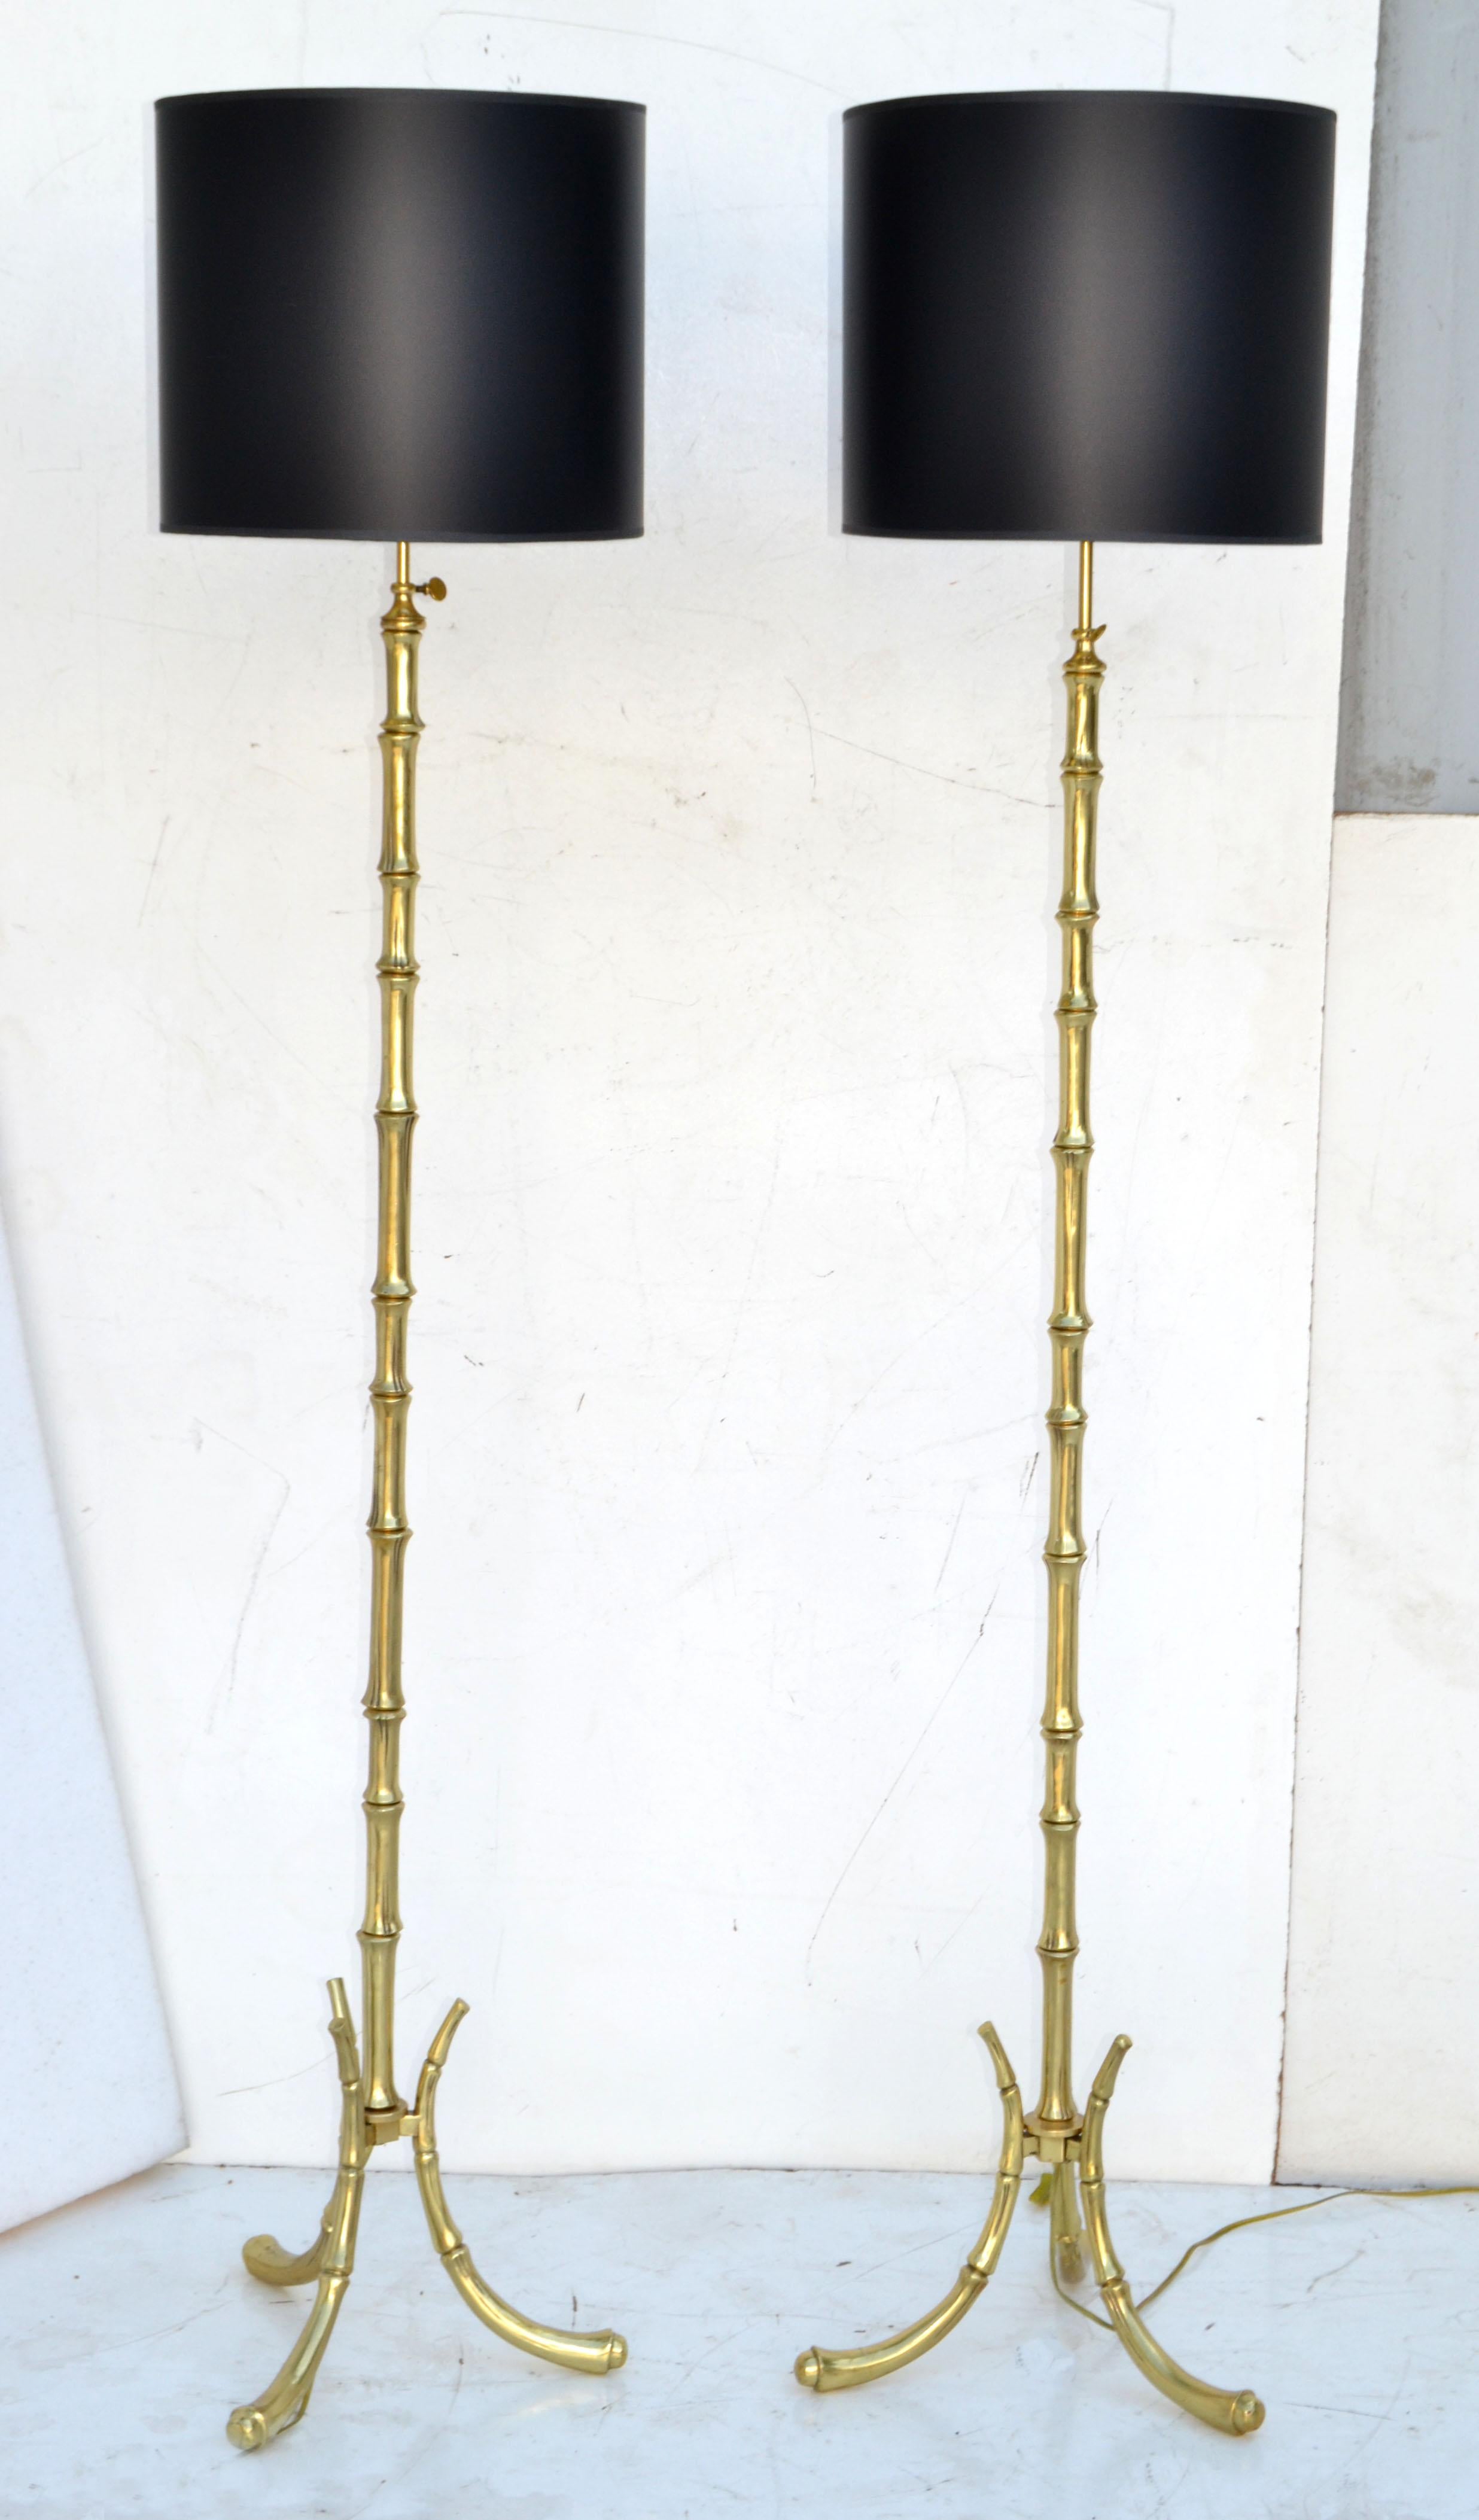 Fantastique paire de lampadaires Maison Baguès en bronze massif Faux Bambou très lourd, lampadaire de haute qualité 
Lampes modernes françaises du milieu du siècle, fabriquées dans les années 1950.
Câblé aux États-Unis, en état de marche, chaque